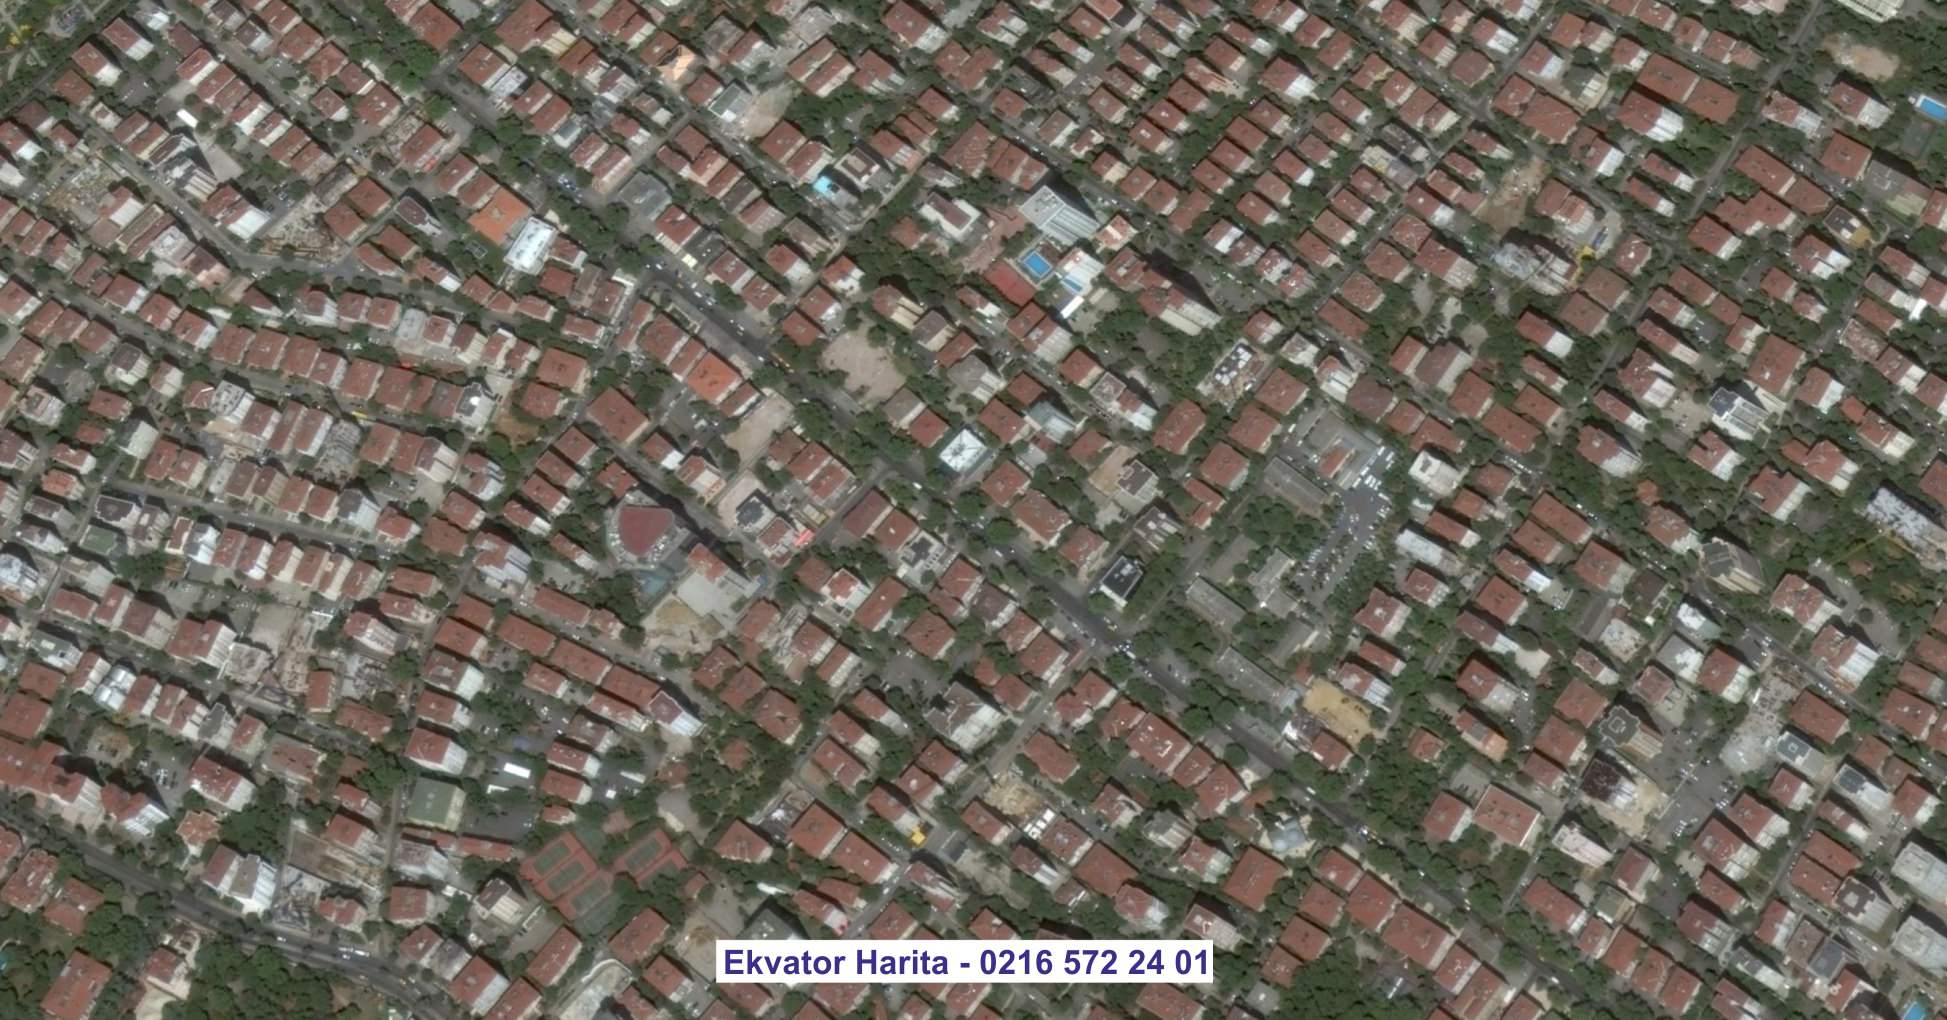 Sancaktepe Uydu Görüntüsü Örnek Fotoğrafı